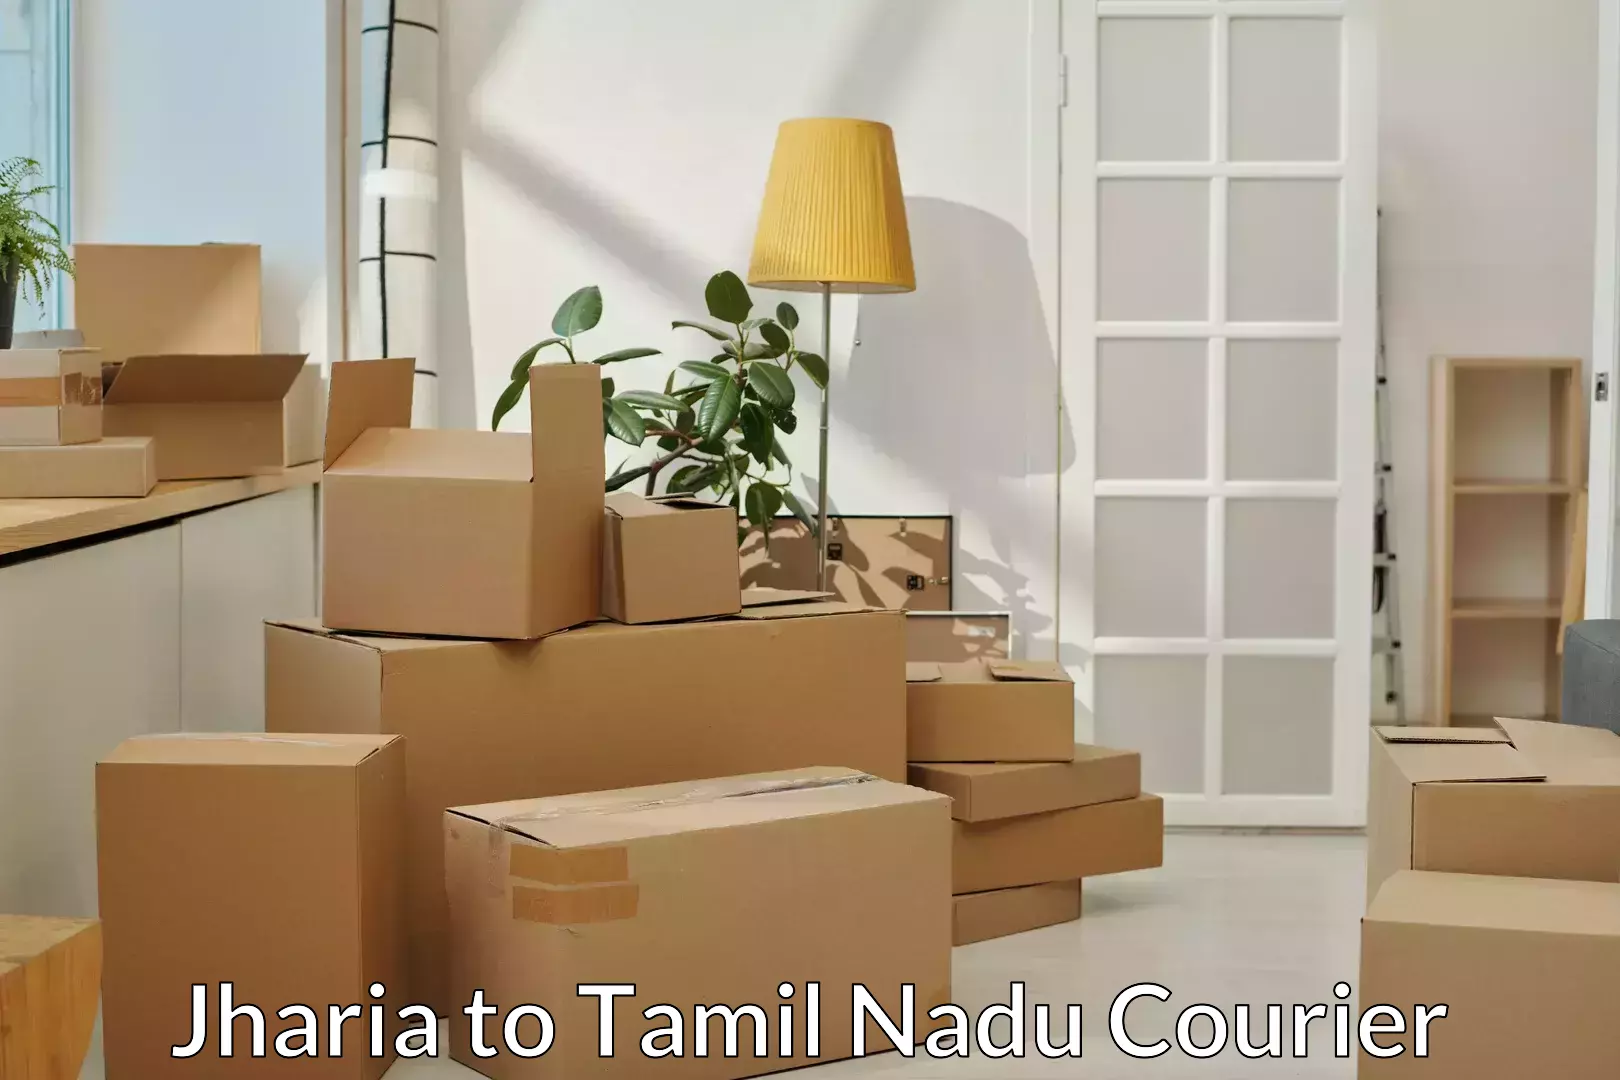 Efficient furniture transport Jharia to Tamil Nadu